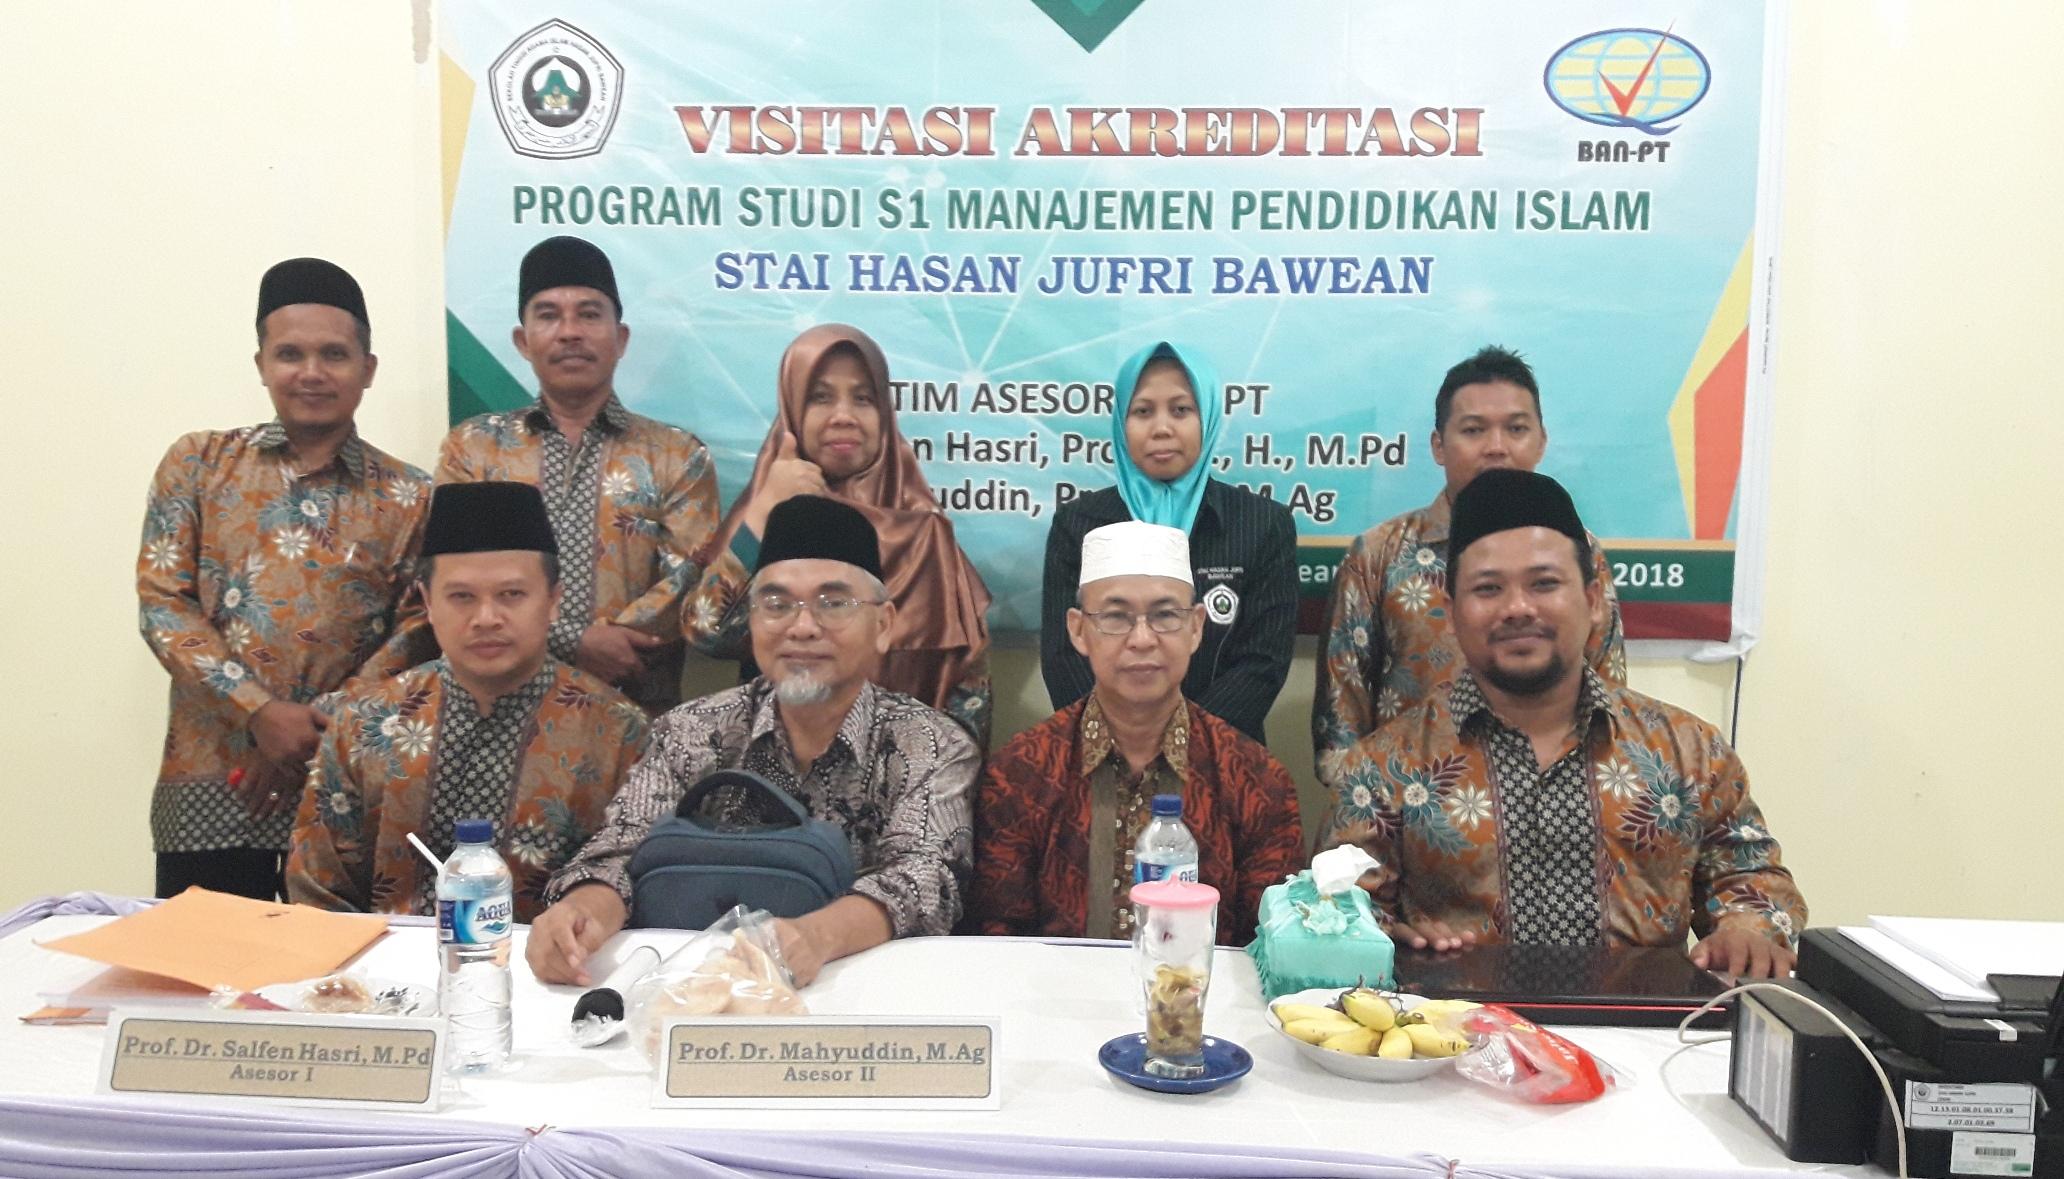 Akreditasi Progran Studi Manajemen Pendidikan Islam